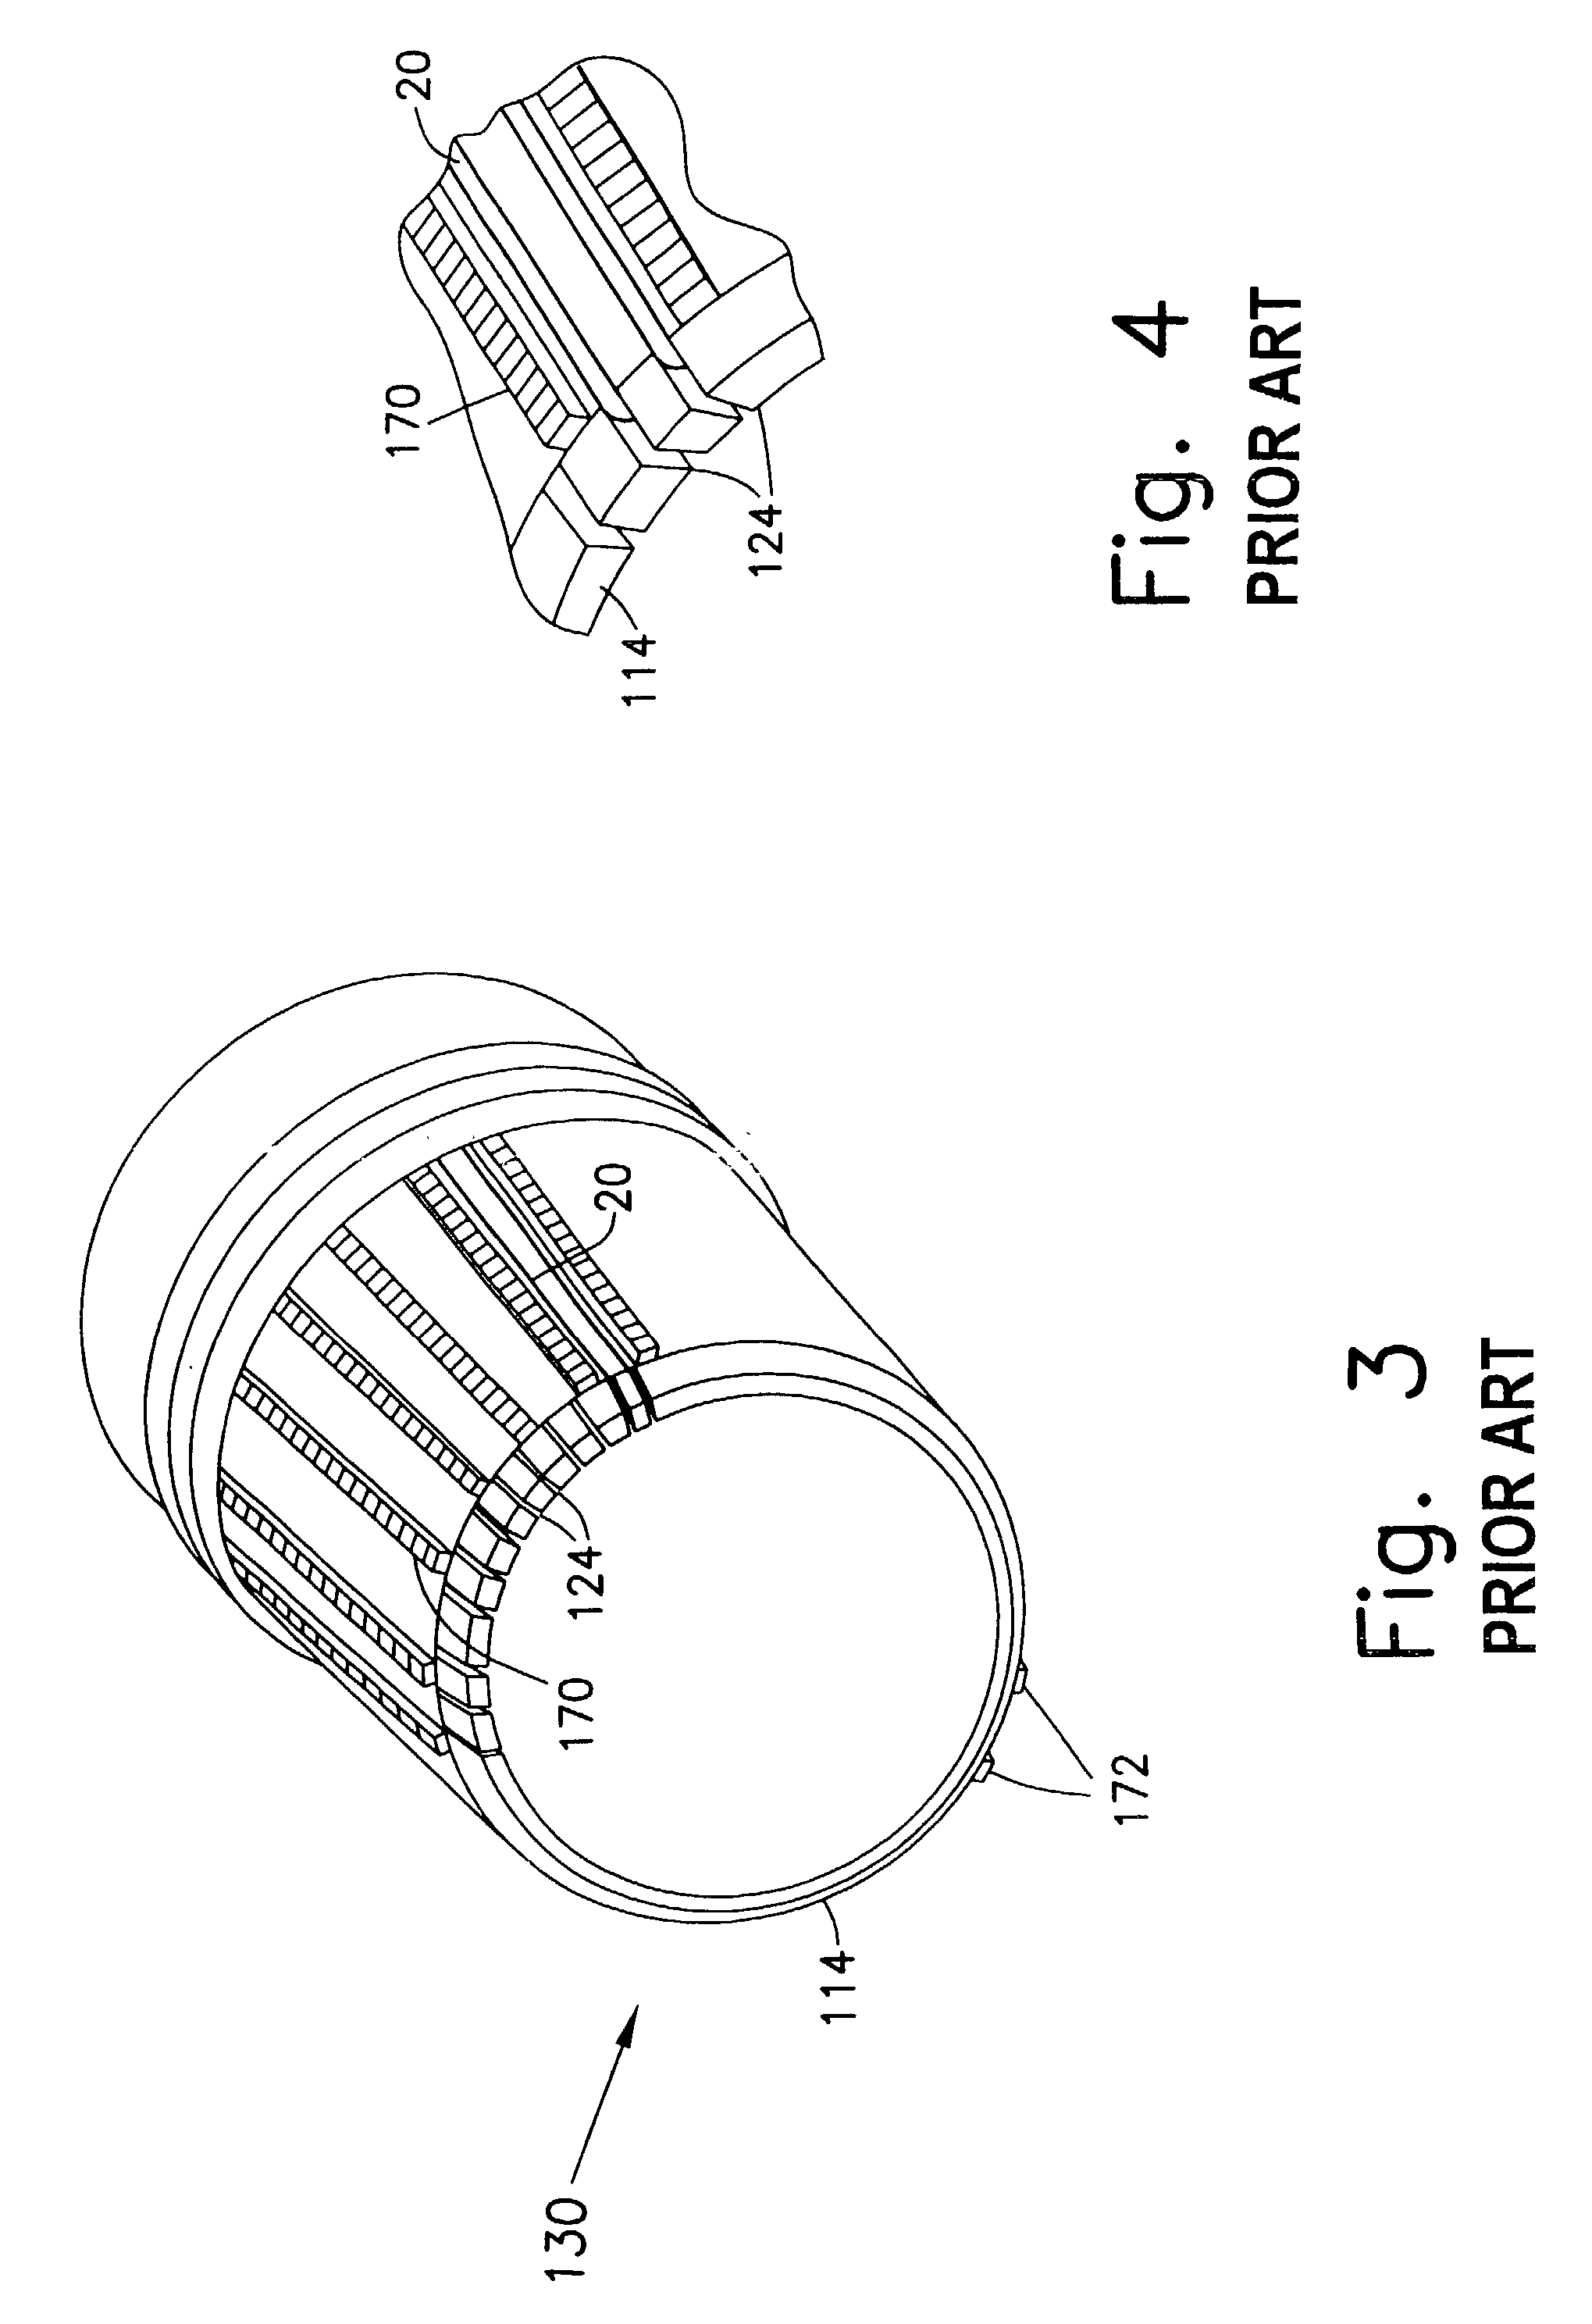 Ligating band dispenser with transverse ridge profile